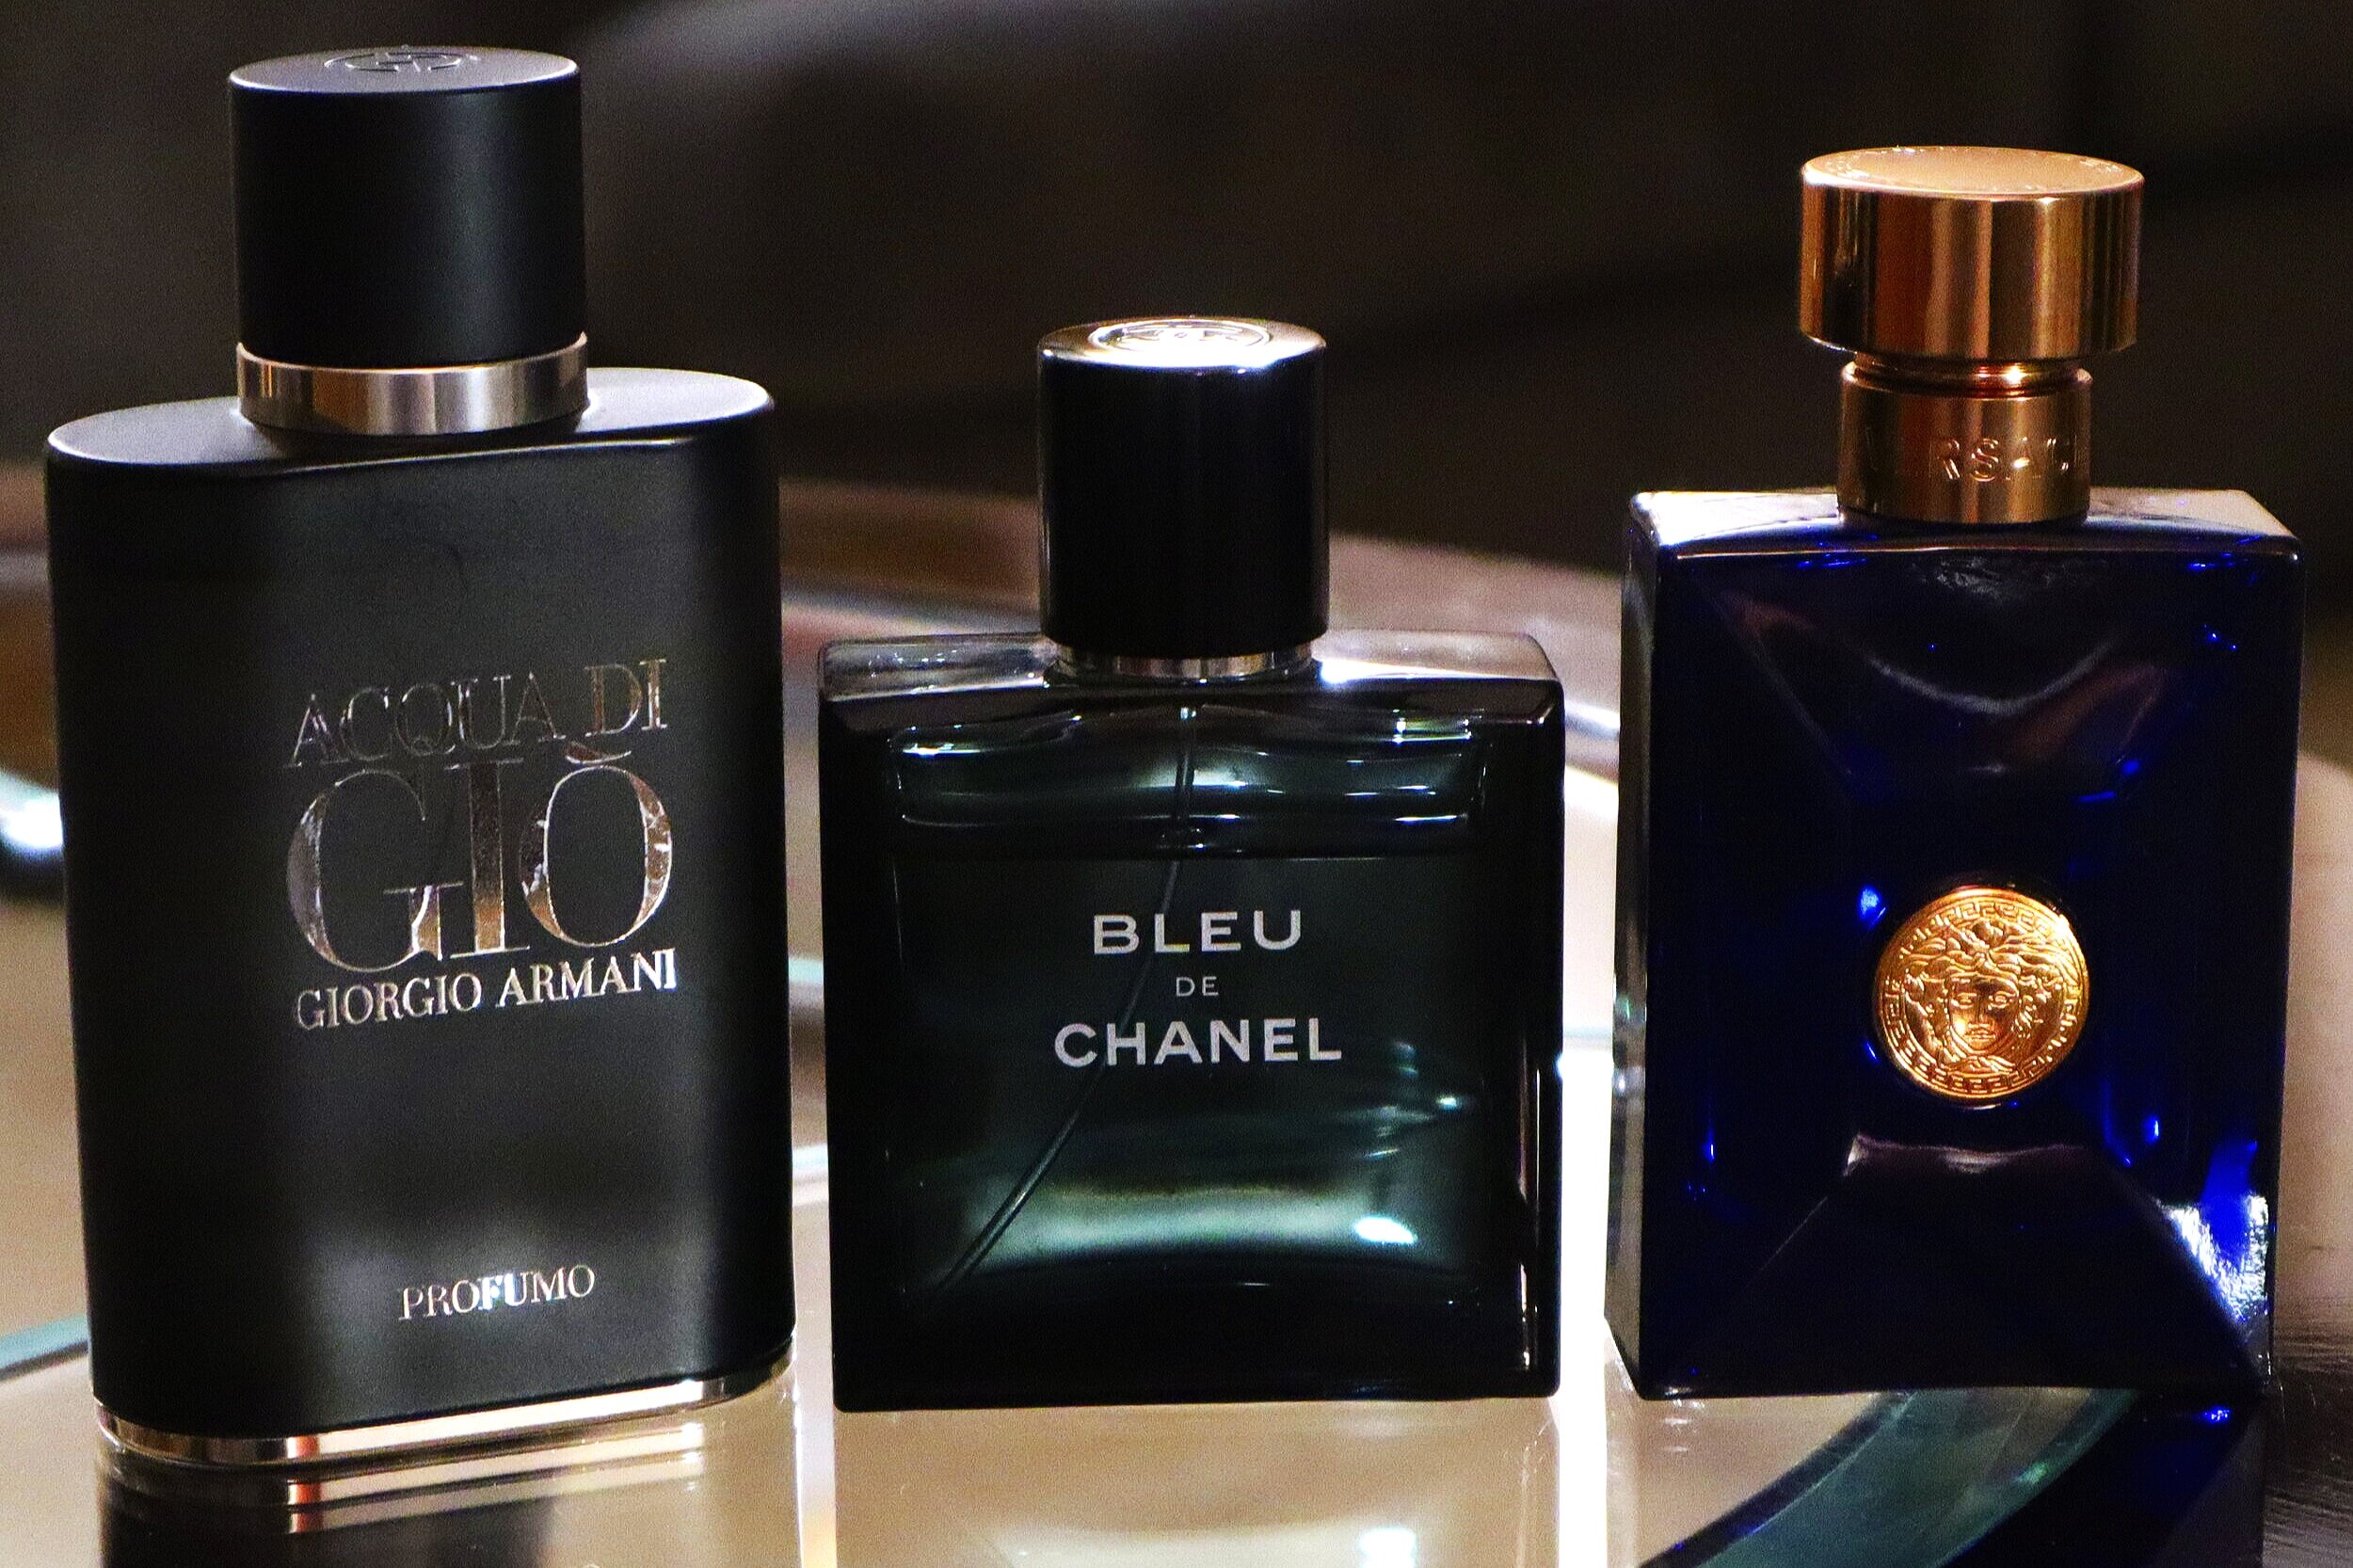 Bleu de Chanel Parfum Review - COMPLIMENTS VERSATILITY & CLASS 